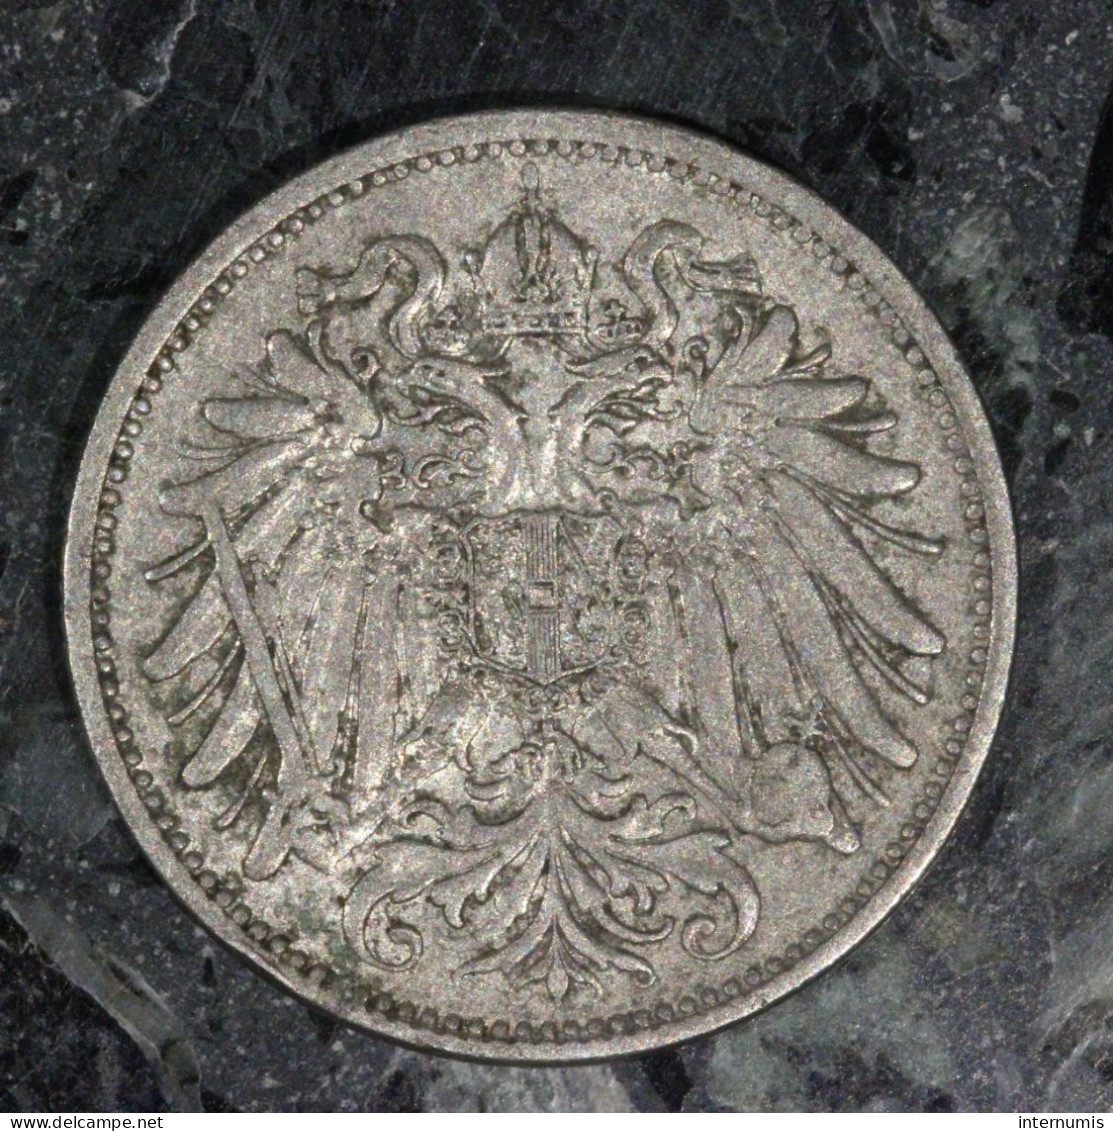  Autriche / Austria, , 20 Heller, 1914, , Nickel, SUP (AU),
KM#2803 - 2 Pfennig